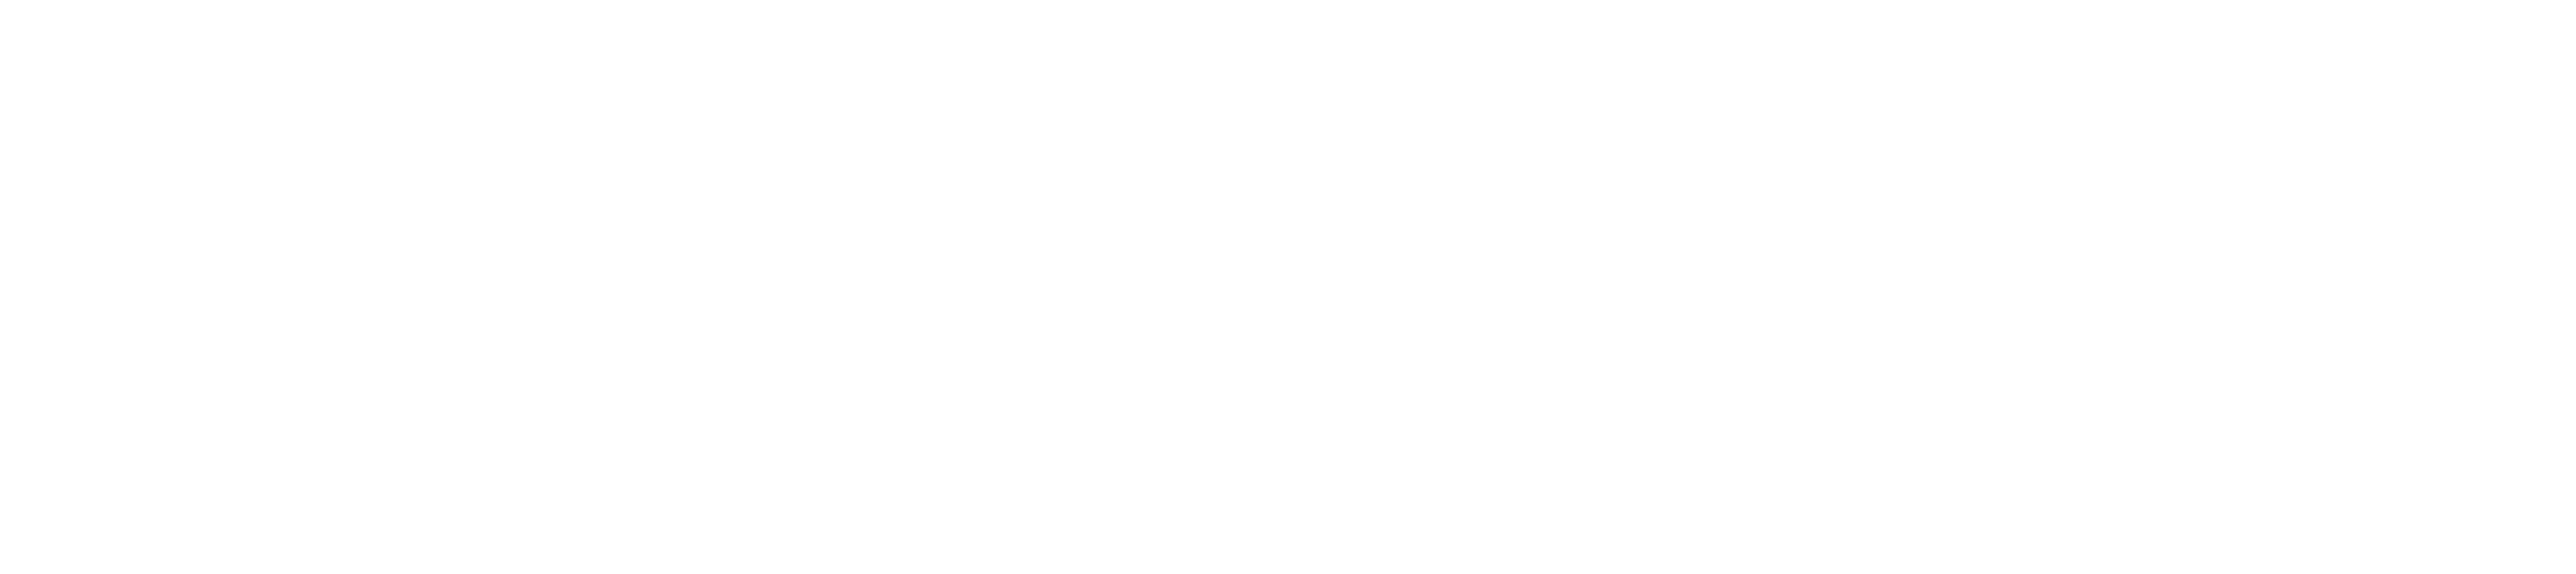 FlowVPS